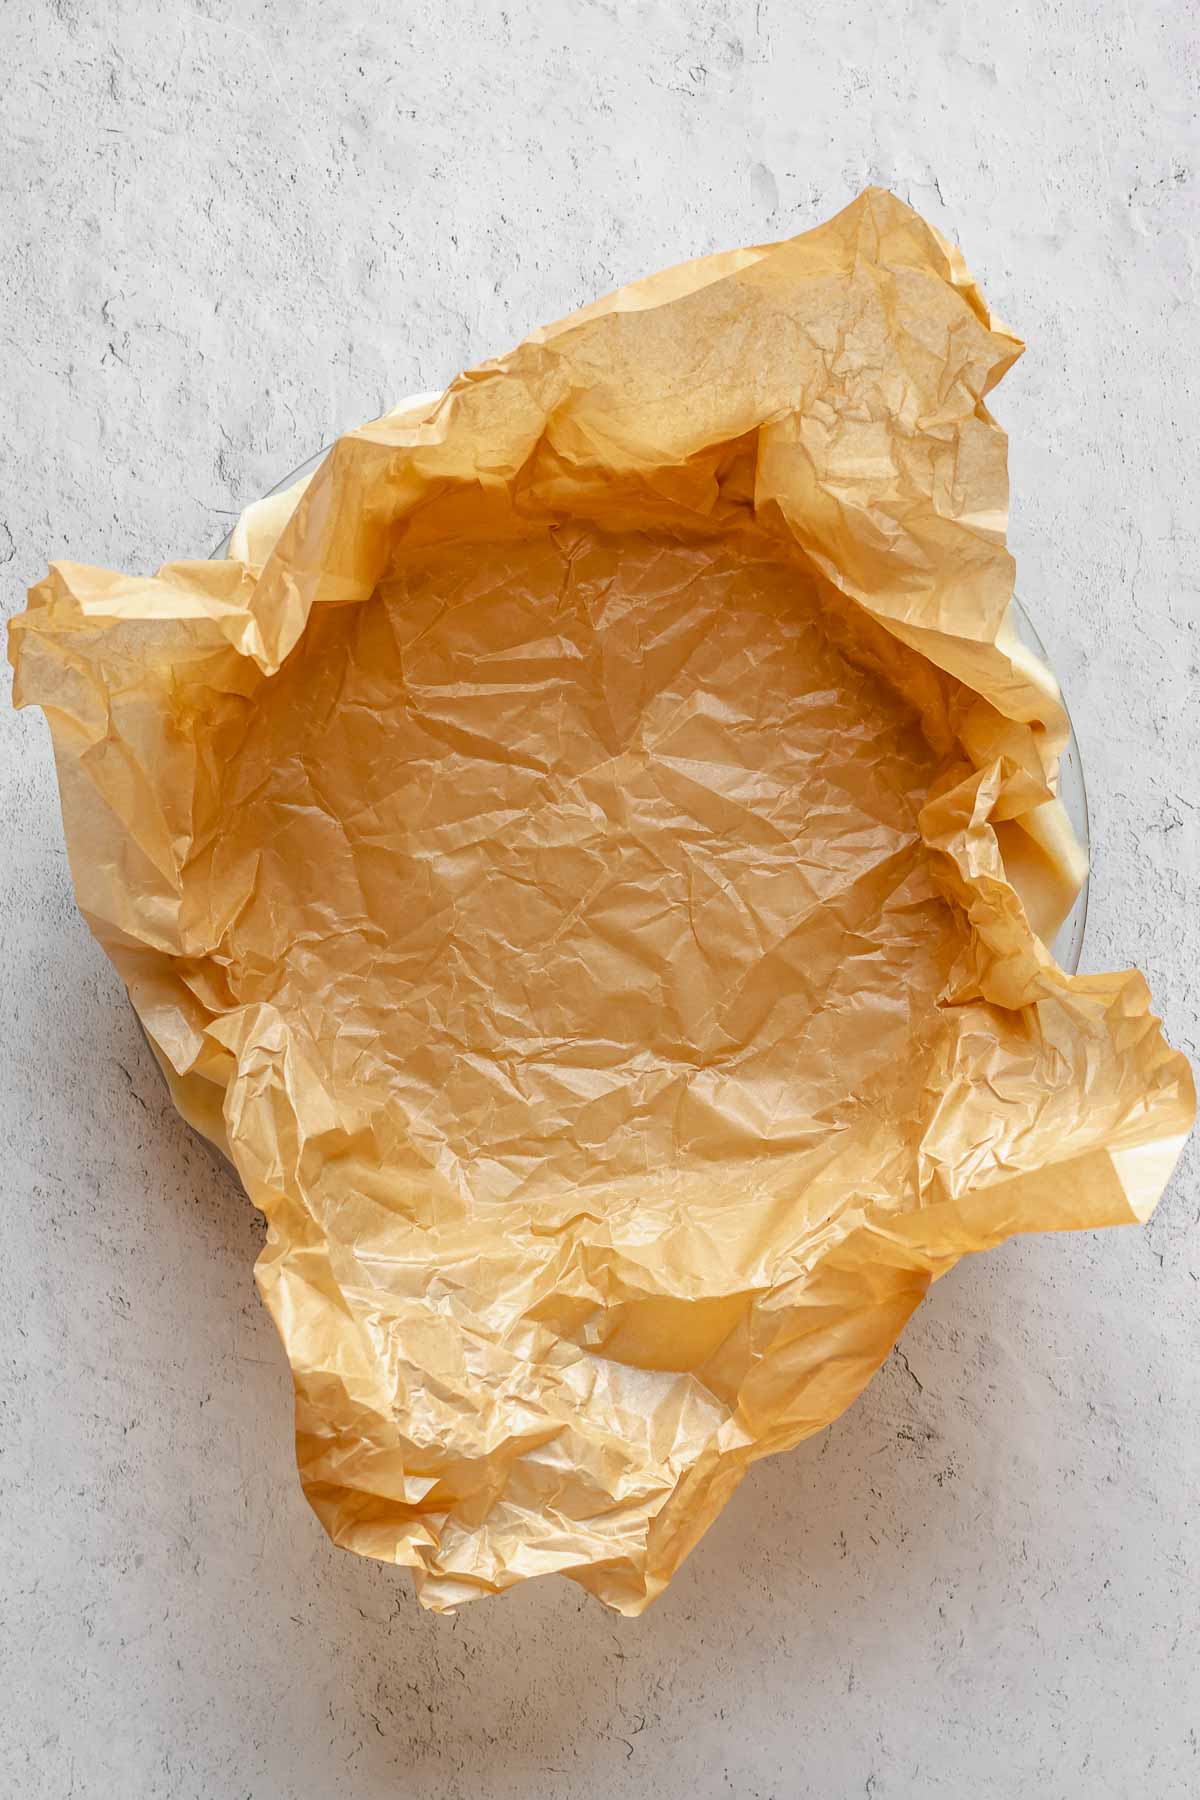 Parchment paper set into pie crust.